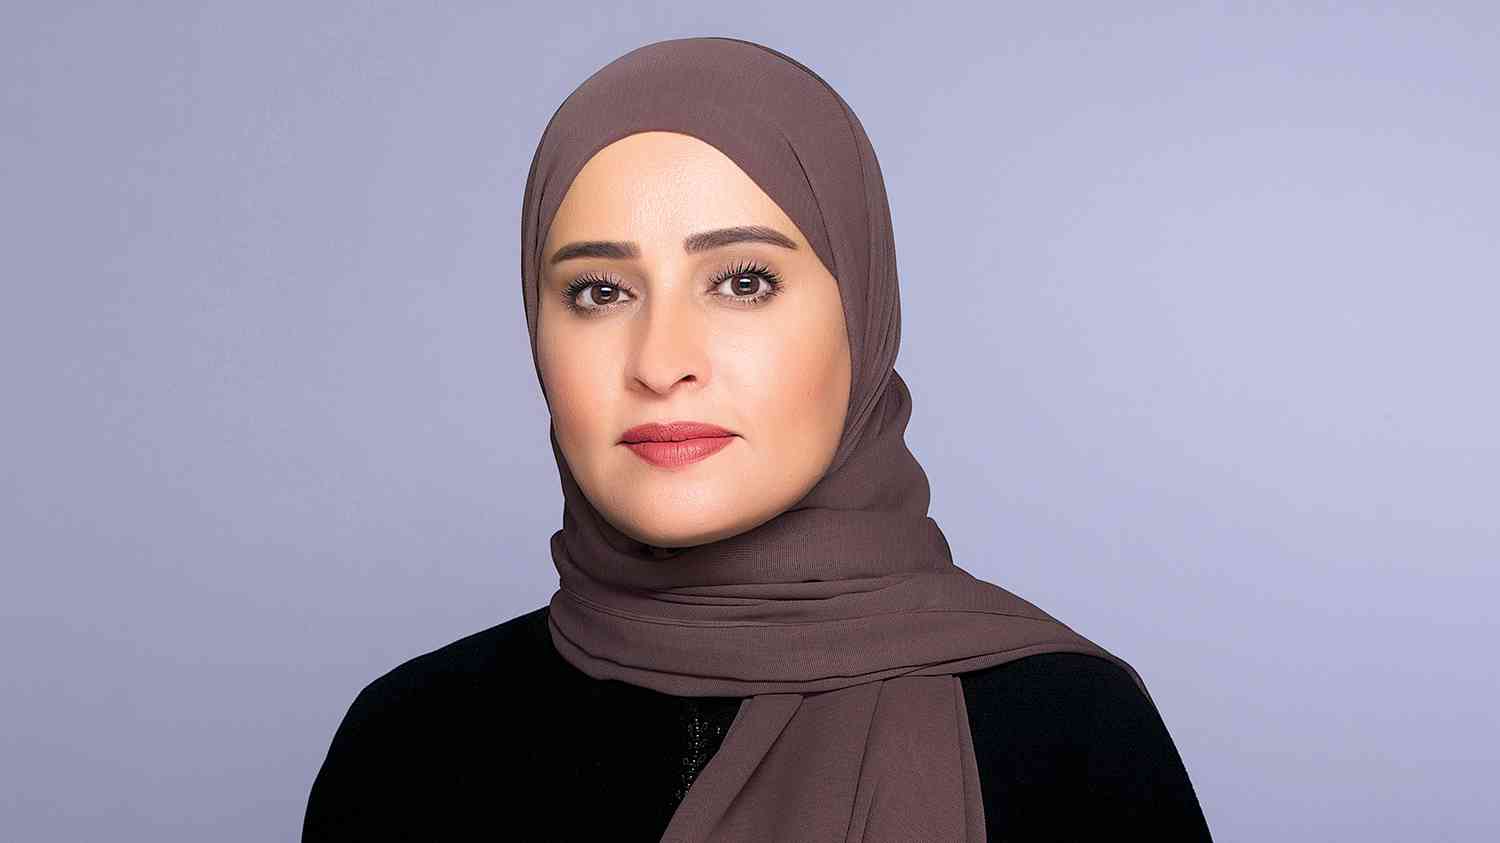 معالي عهود بنت خلفان الرومي وزيرة دولة للتطوير الحكومي والمستقبل